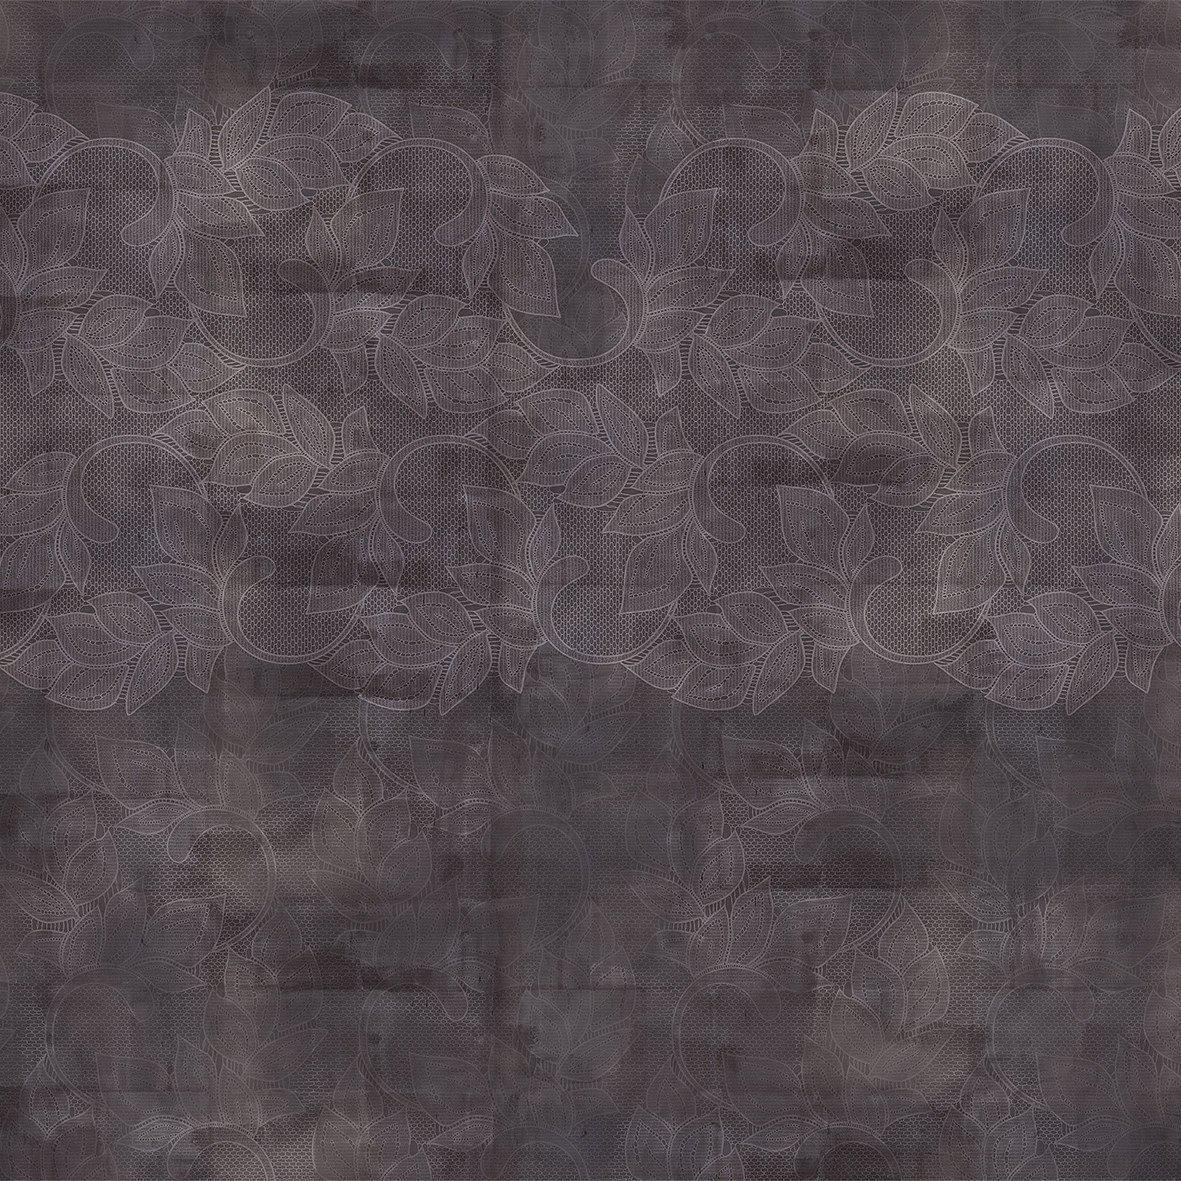 Midnight Lace-Digital Wallpaper-London Art-Dark Purple-15122-02